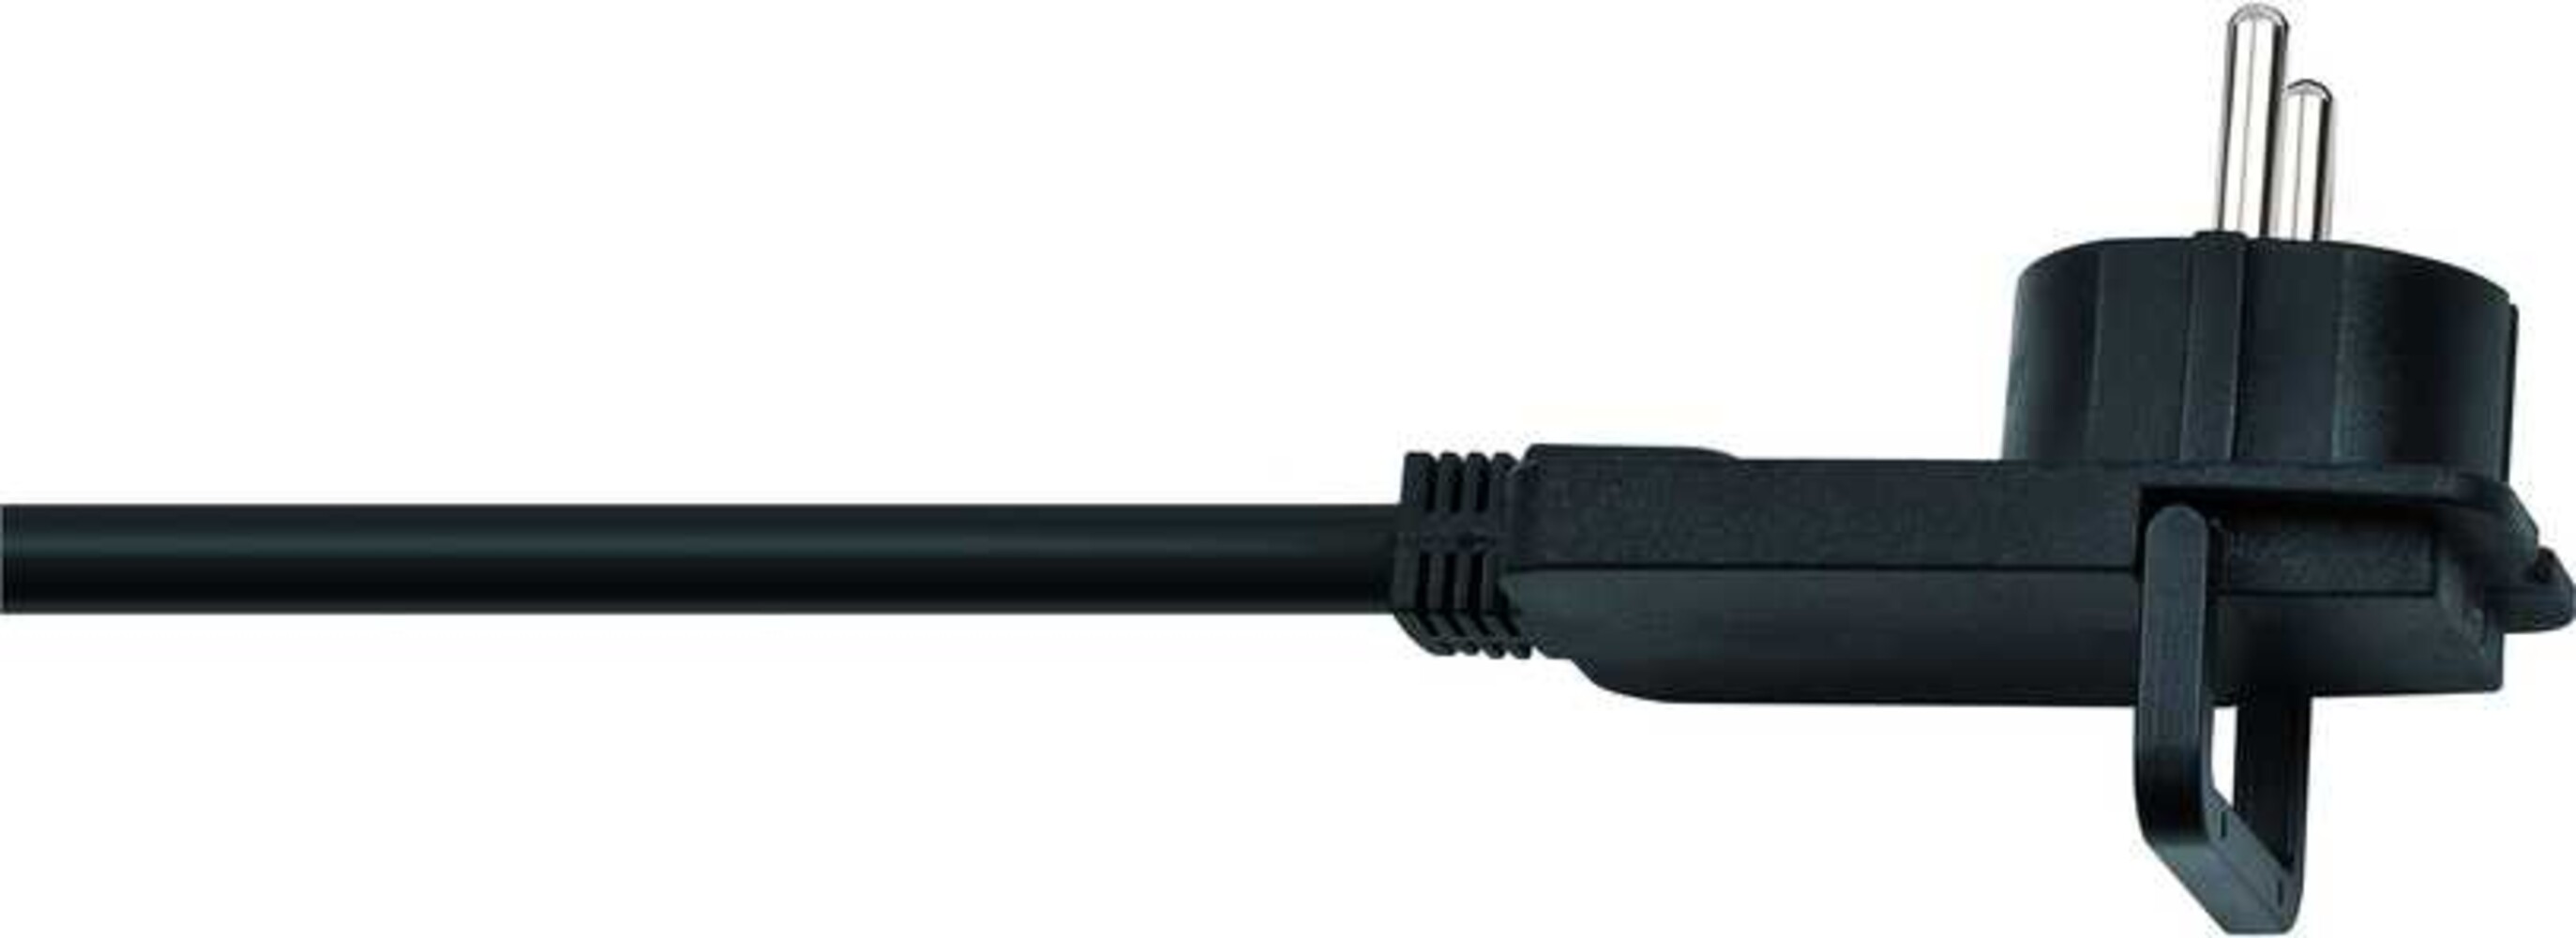 Hochwertiges Brennenstuhl Verlängerungskabel aus robustem Kunststoff, 10m lang, schwarz, H05VV F3G1.5